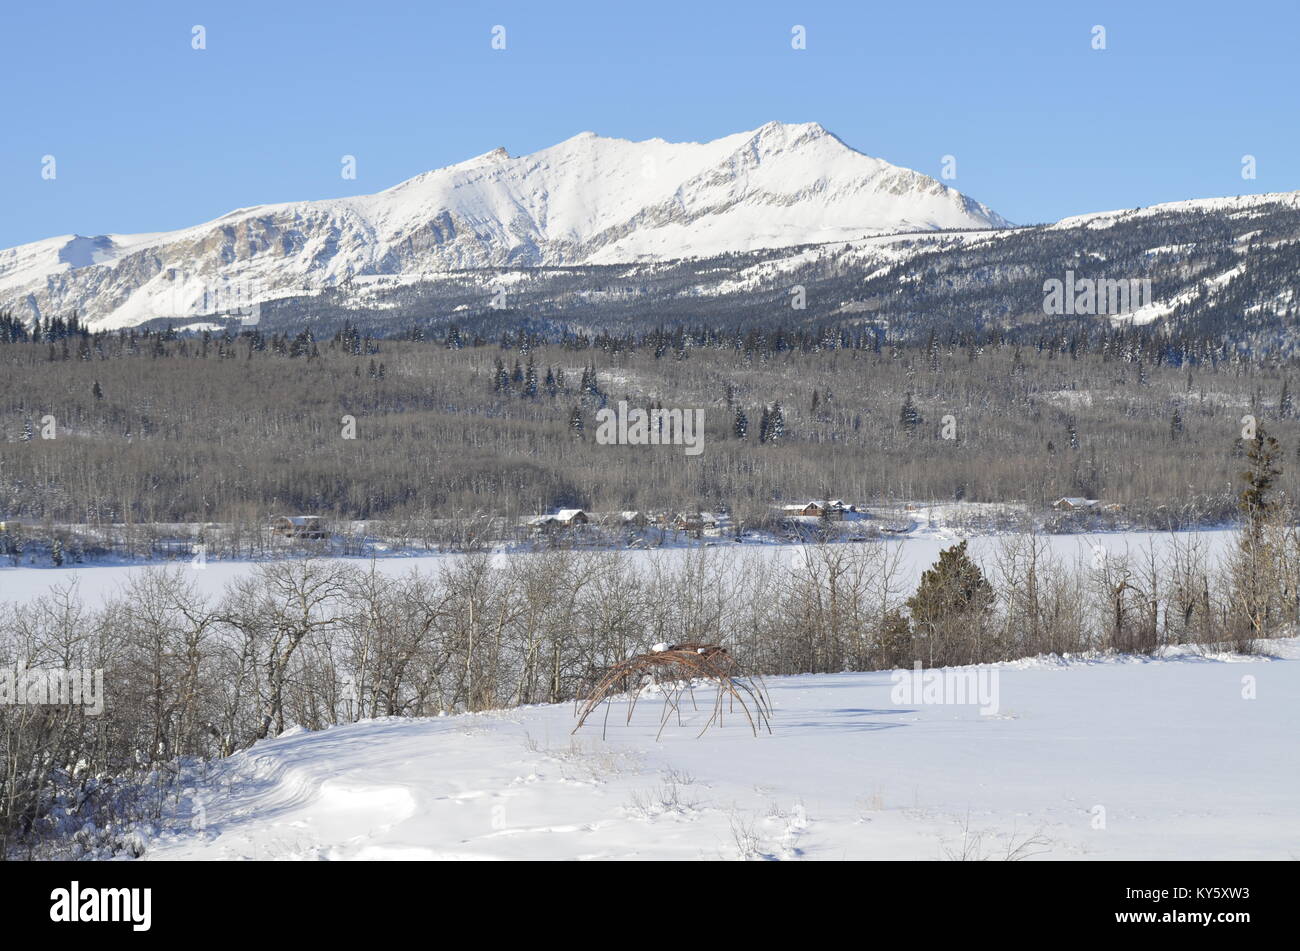 Zwei Skelett Schweiß Hütten sitzen in einem schneebedeckten Feld mit einem herrlichen Blick auf die Berge und den See im Hintergrund Stockfoto